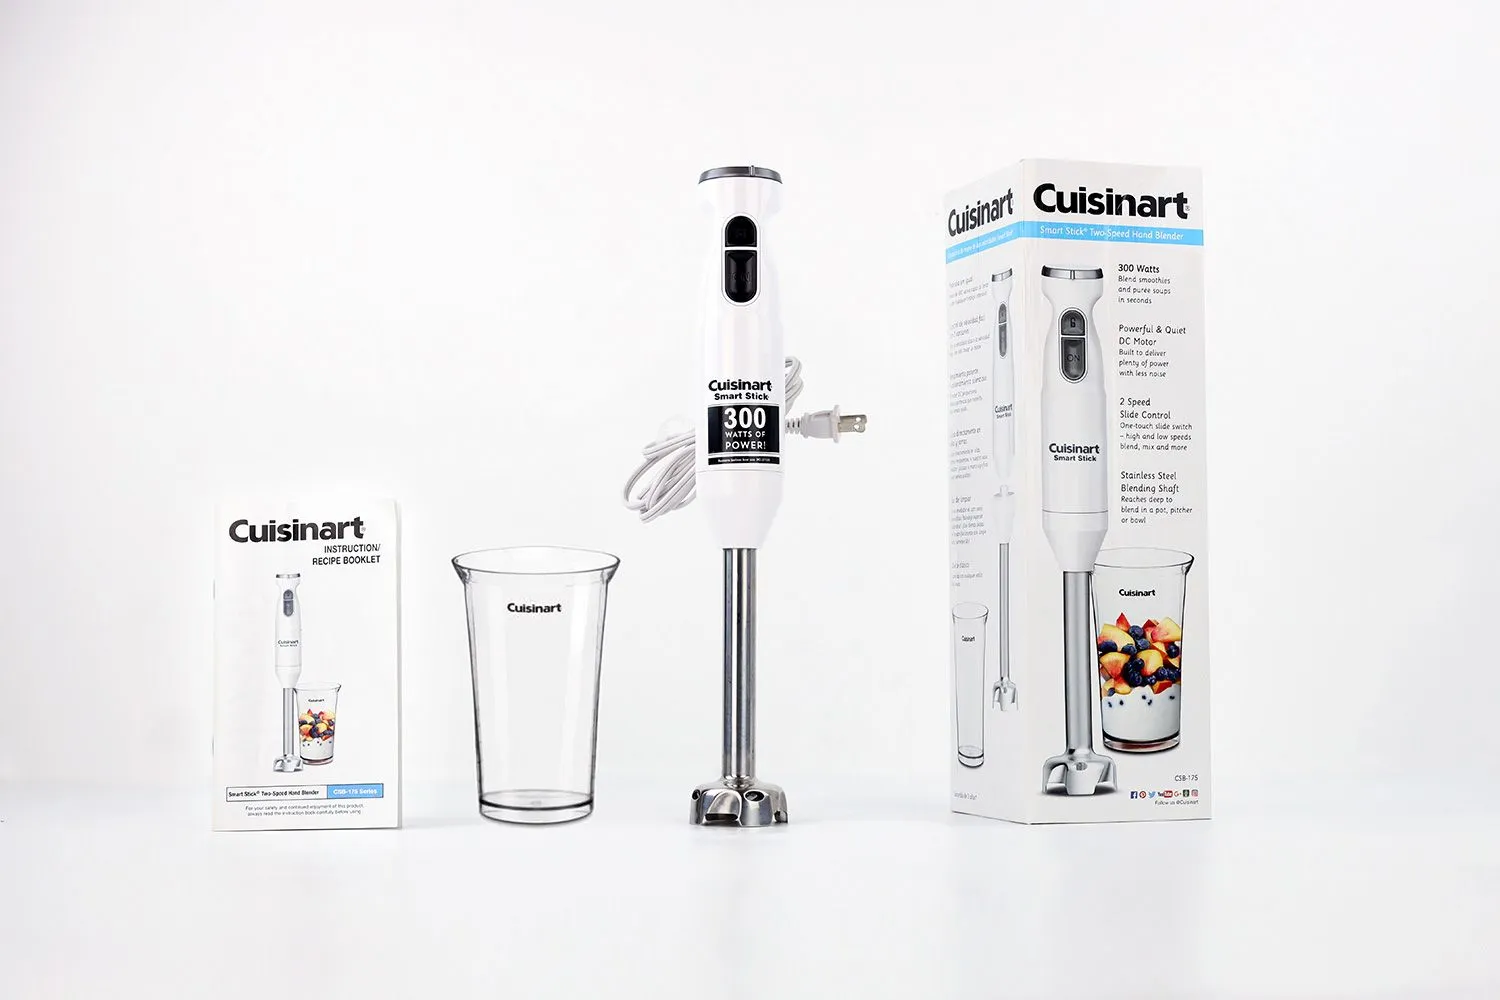 Cuisinart Smart Stick Review: An affordable hand blender